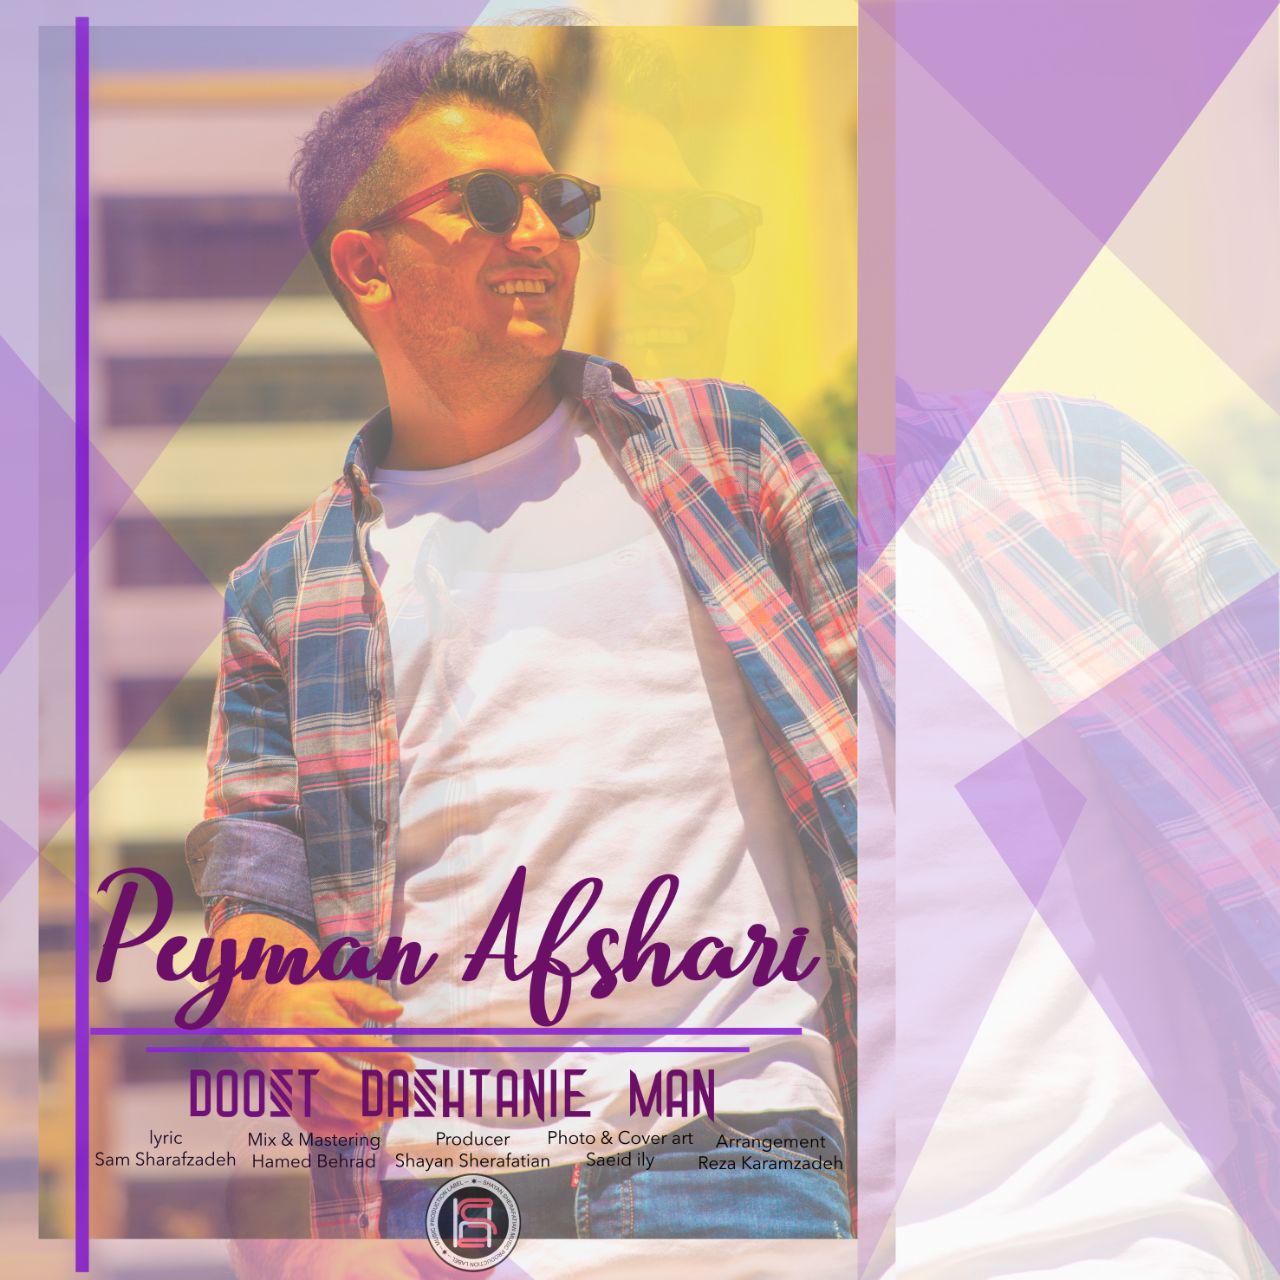  دانلود آهنگ جدید پیمان افشاری - دوست داشتنیه من | Download New Music By Peyman Afshari - Doost Dashtanie Man